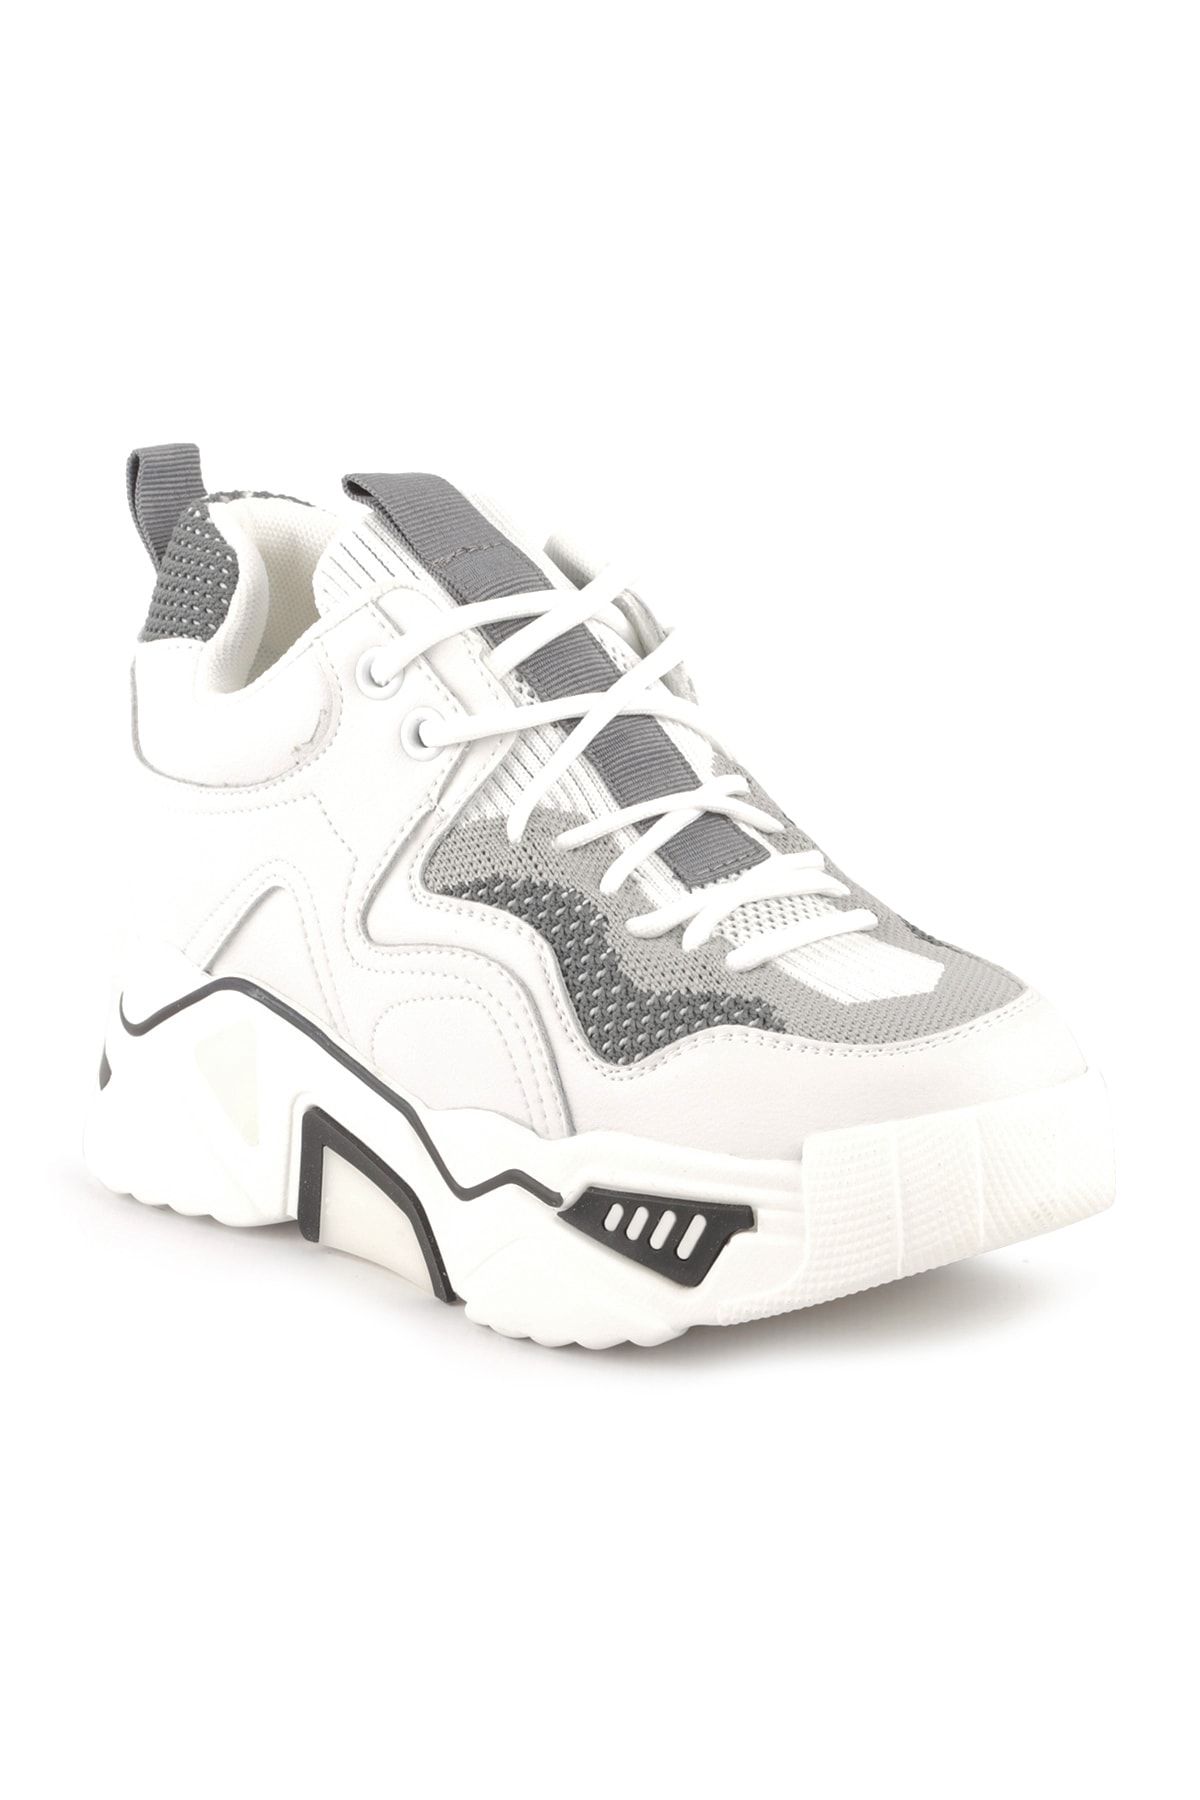 Libero Kadın Beyaz Spor Ayakkabı 302